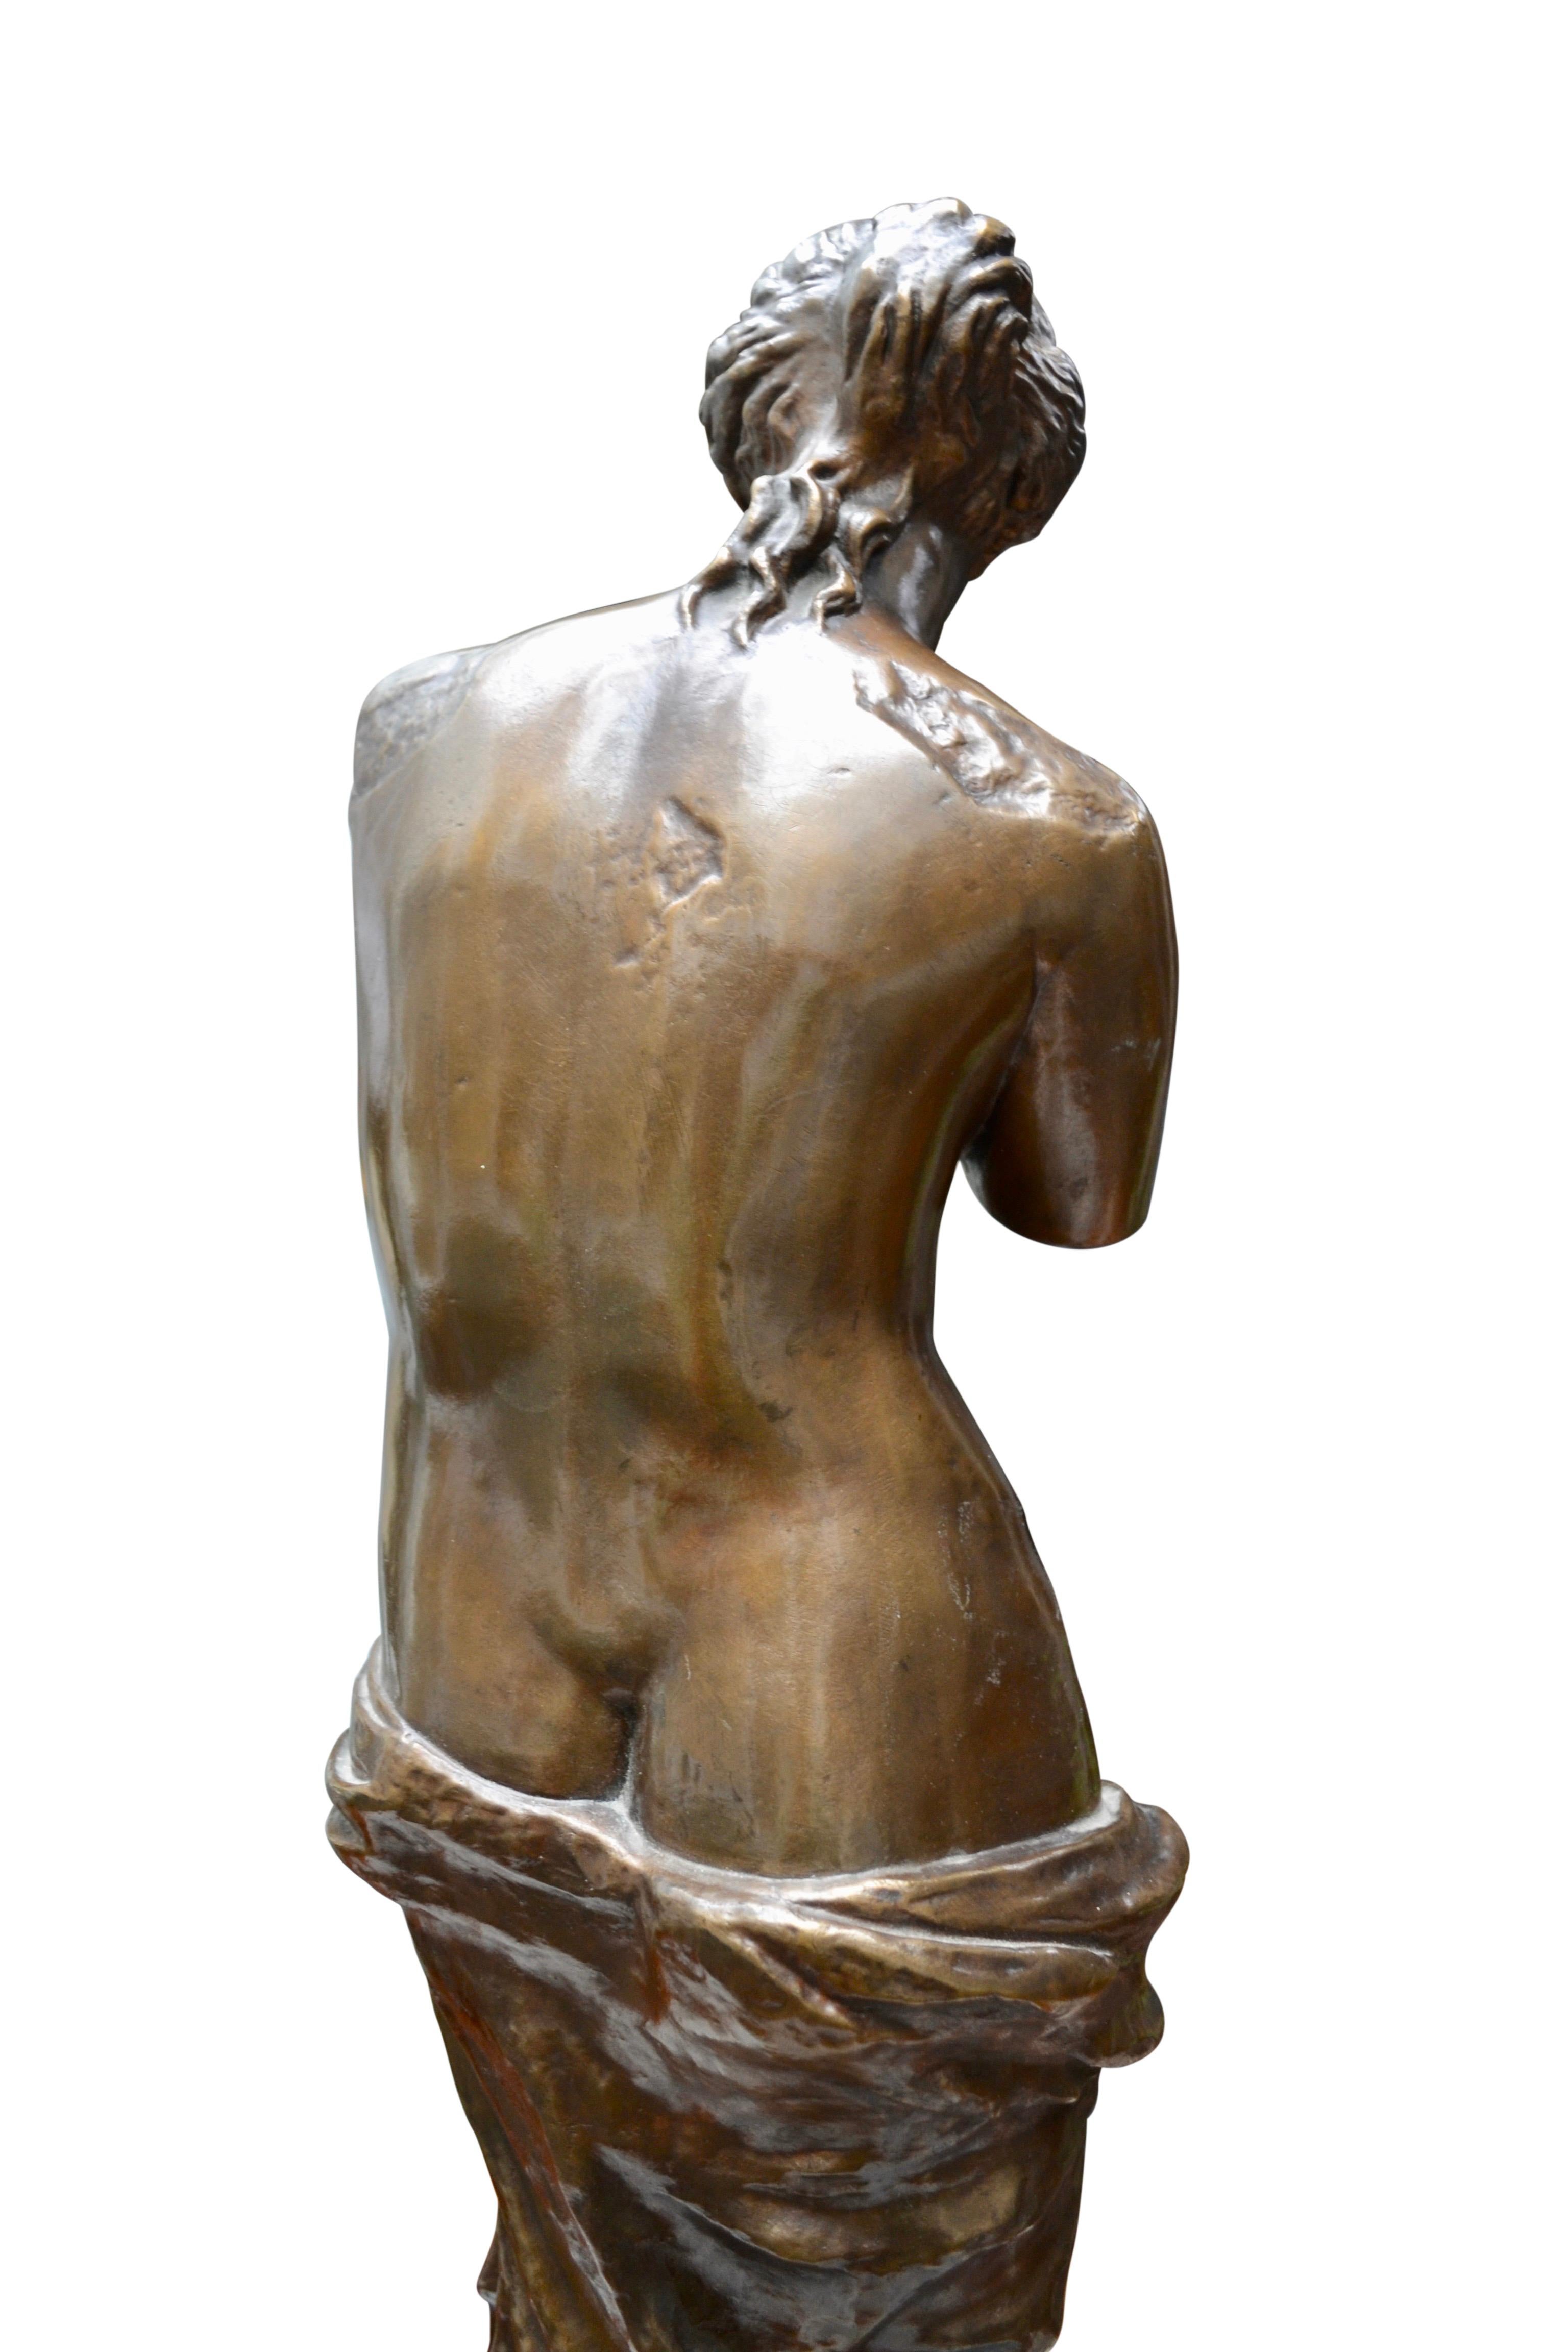 Une très belle étude en bronze du Grand Tour de la célèbre Vénus de Milo avec une excellente patine brune riche et de bons détails de surface finis à la main. Le moulage est inhabituel en ce sens qu'il ne prétend pas cacher les nombreuses